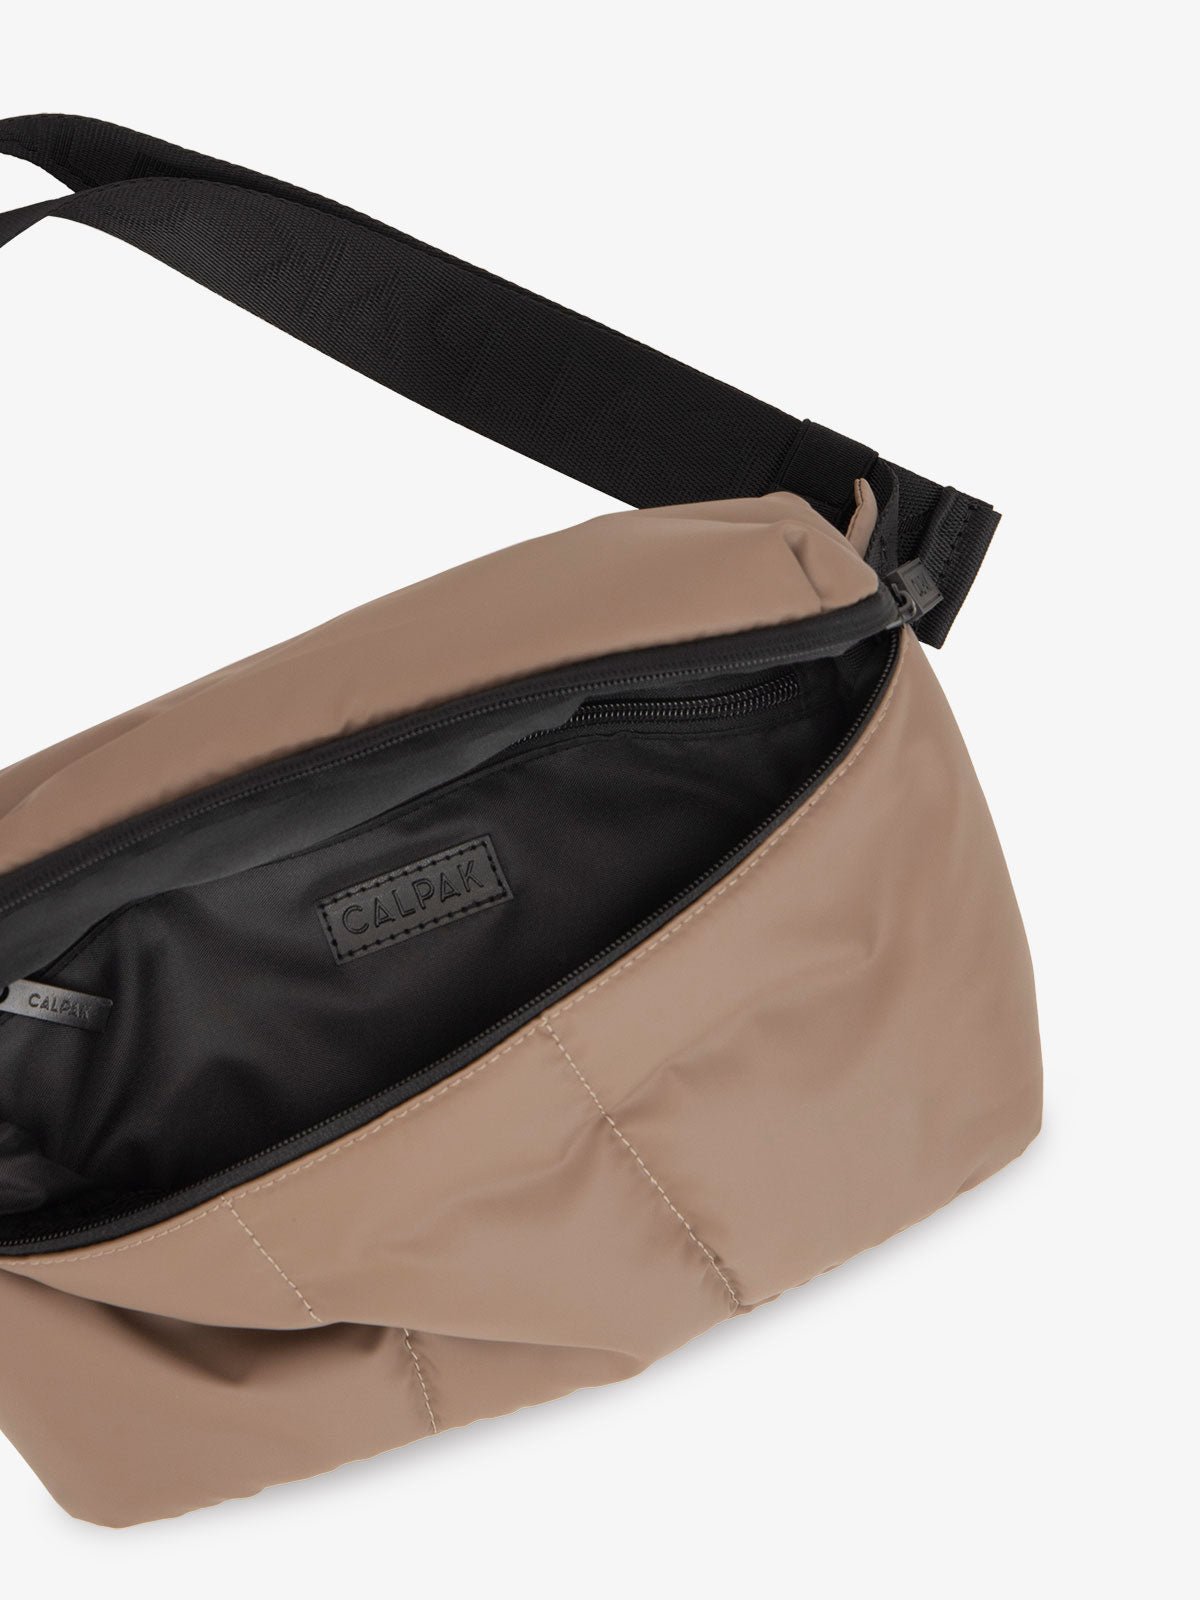 CALPAK Luka belt bag in brown chocolate color